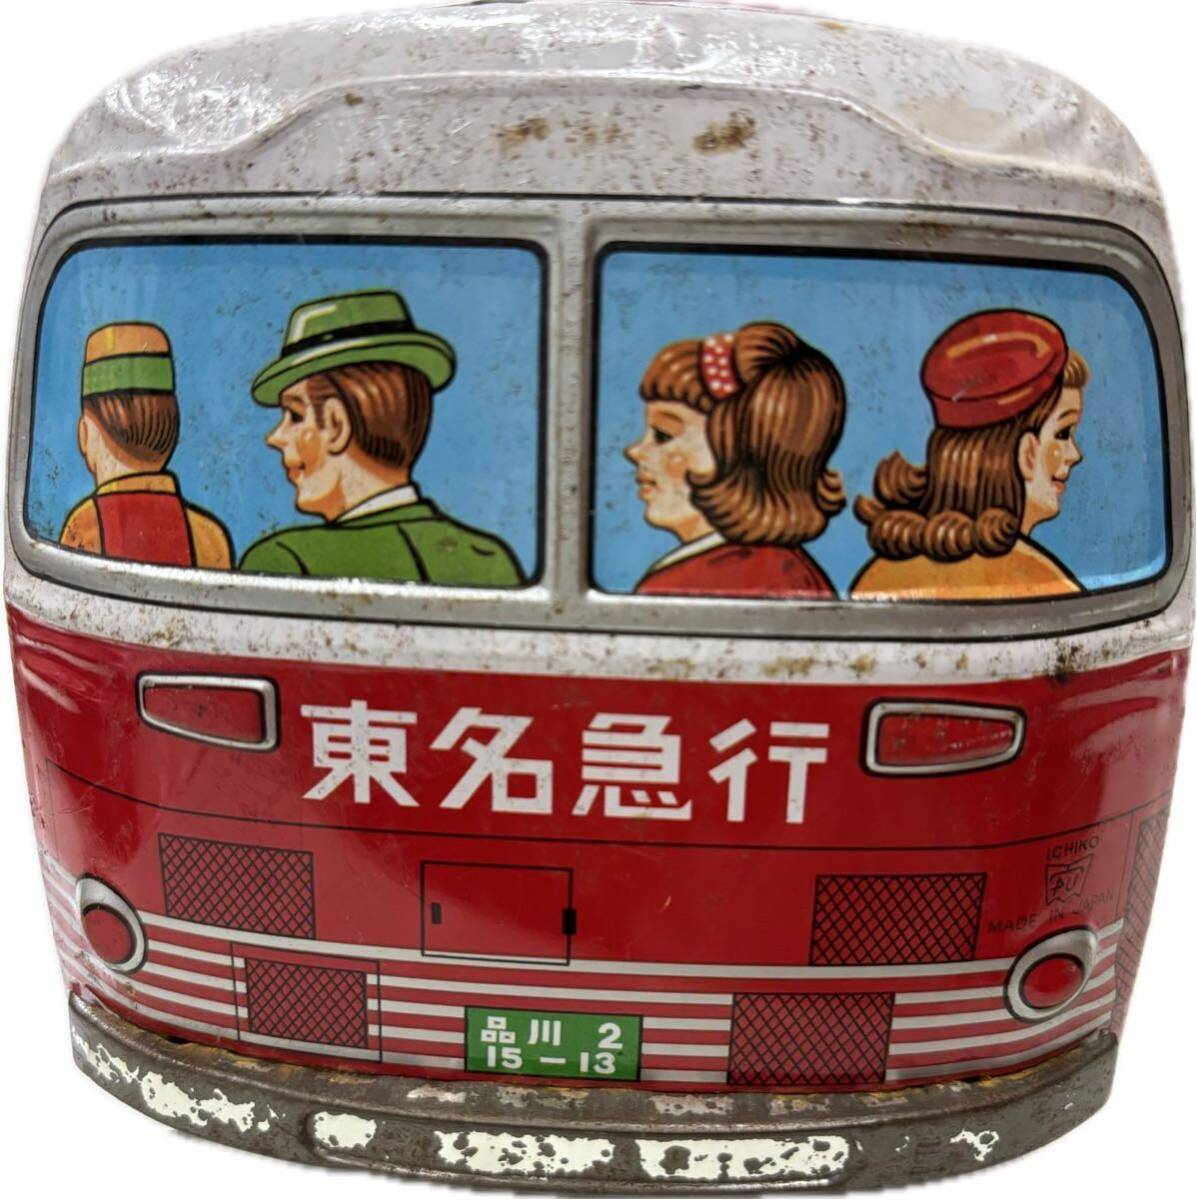 ブリキ製 東名急行バス 東京 イチコー ハンドル付き おもちゃ 当時物 昭和レトロ の画像4